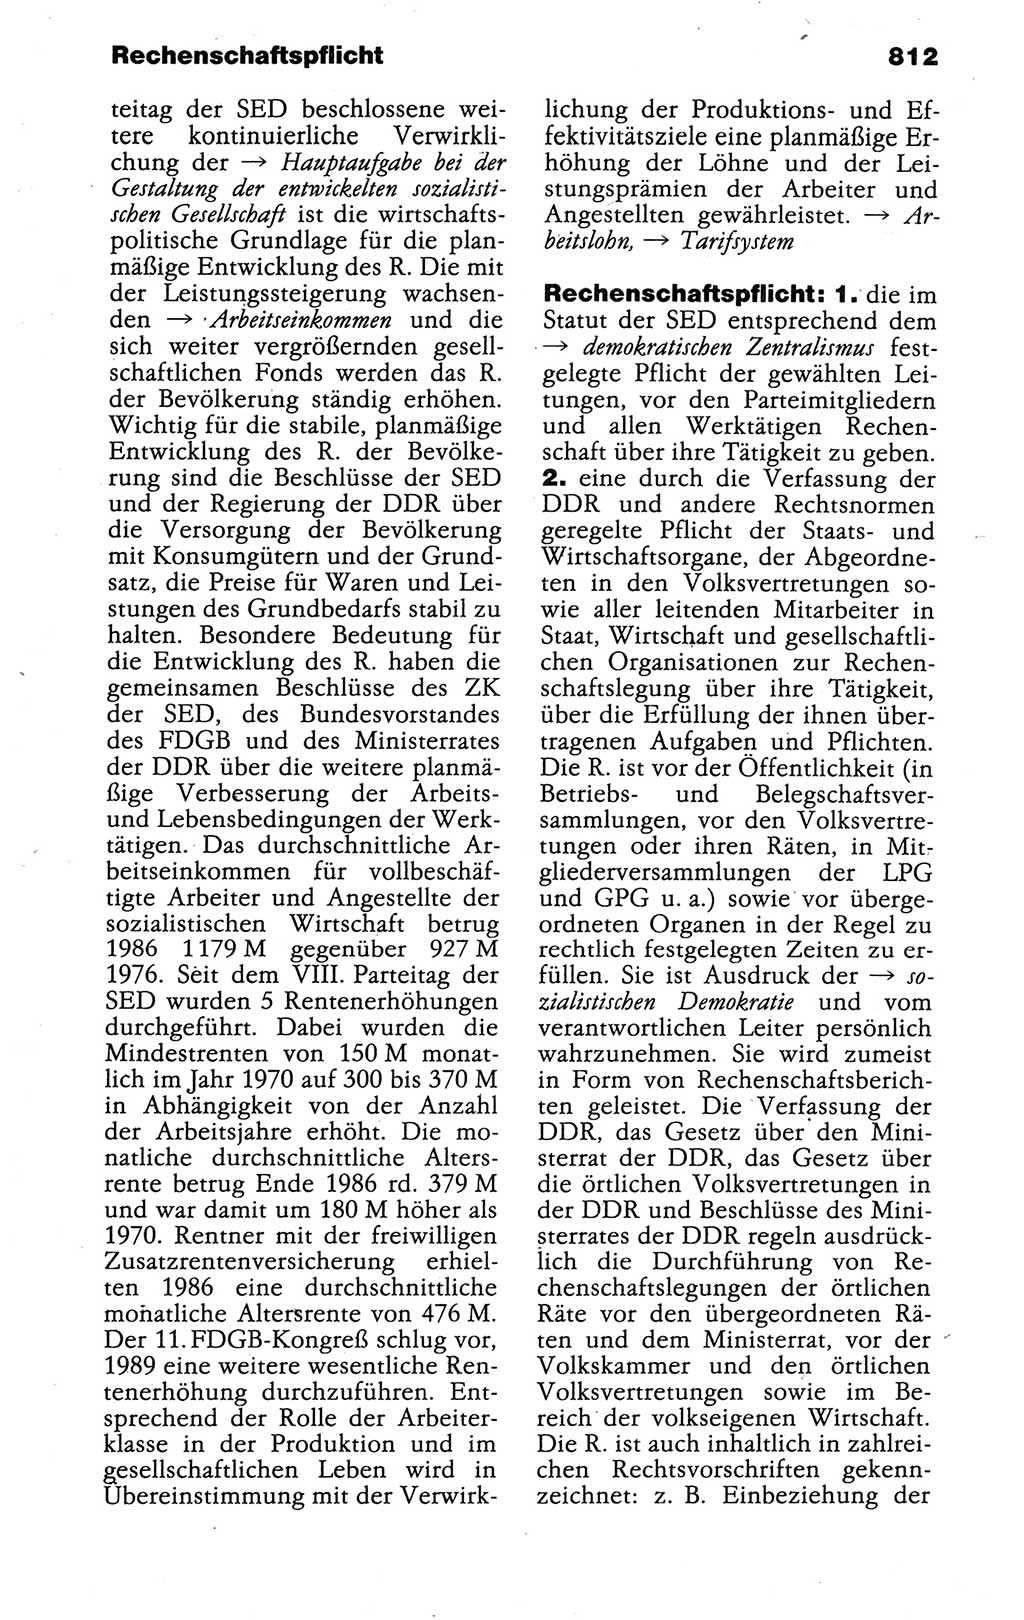 Kleines politisches Wörterbuch [Deutsche Demokratische Republik (DDR)] 1988, Seite 812 (Kl. pol. Wb. DDR 1988, S. 812)